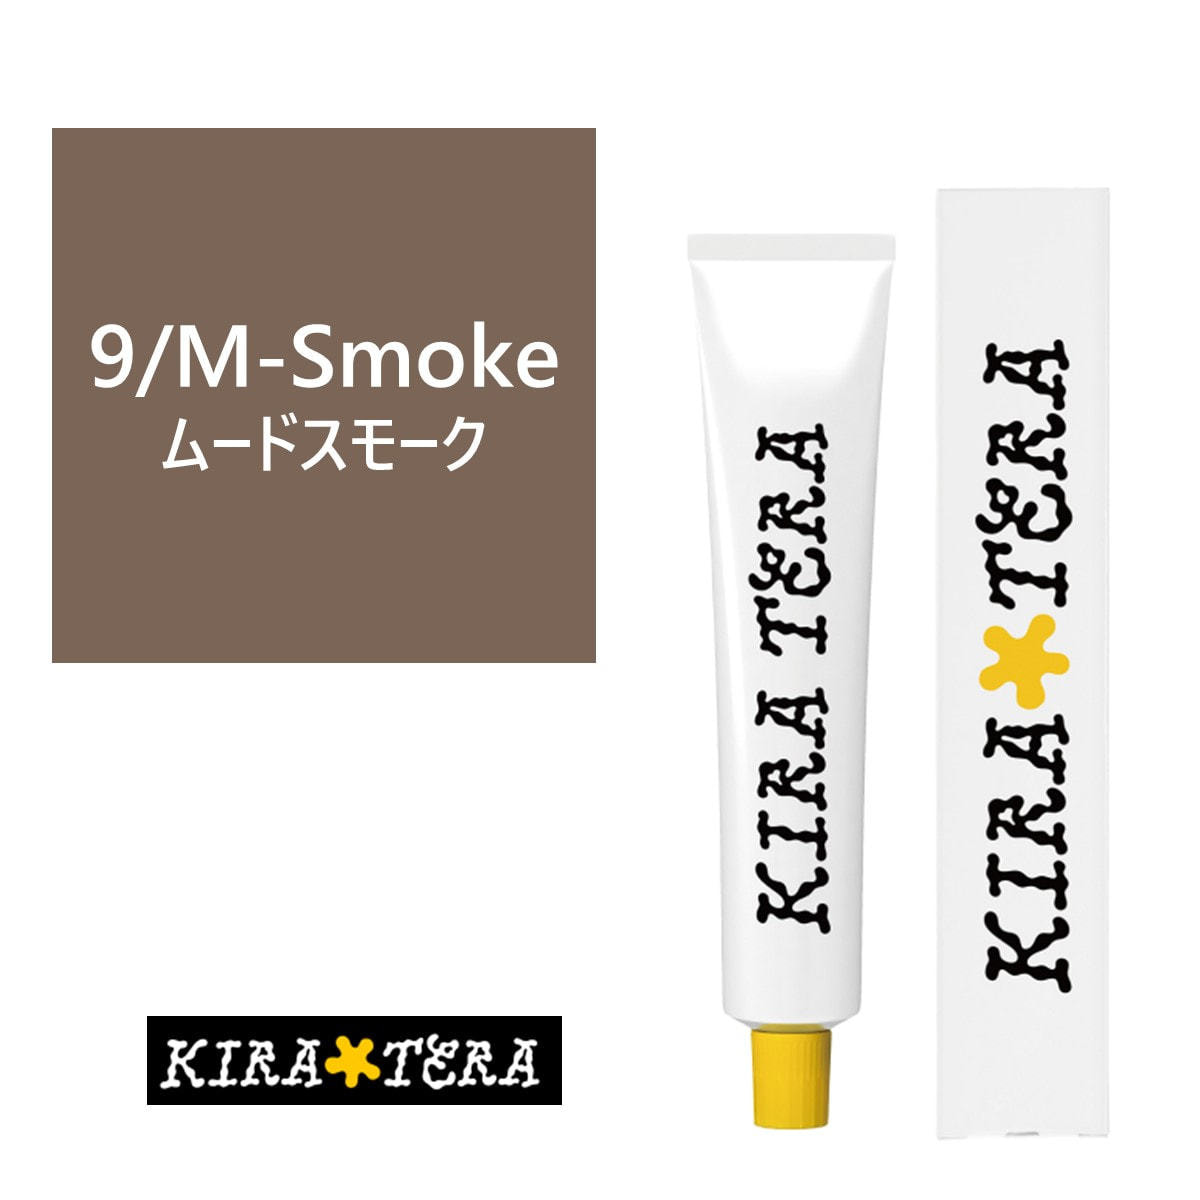 キラテラカラー 9/M-Smoke(ムードスモーク) 100g【医薬部外品】